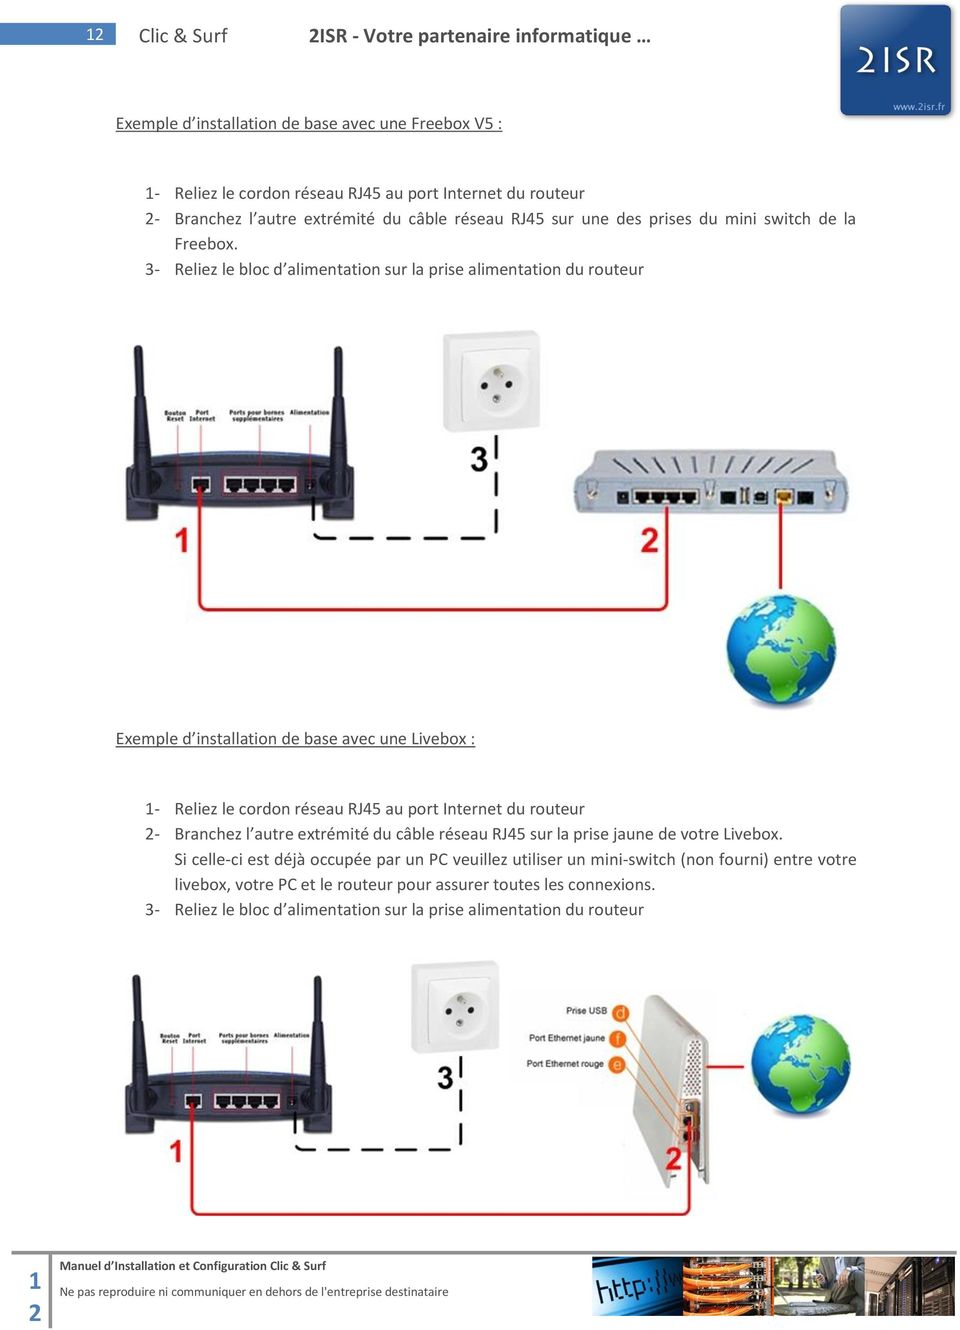 3- Reliez le bloc d alimentation sur la prise alimentation du routeur Exemple d installation de base avec une Livebox : 1- Reliez le cordon réseau RJ45 au port Internet du routeur 2- Branchez